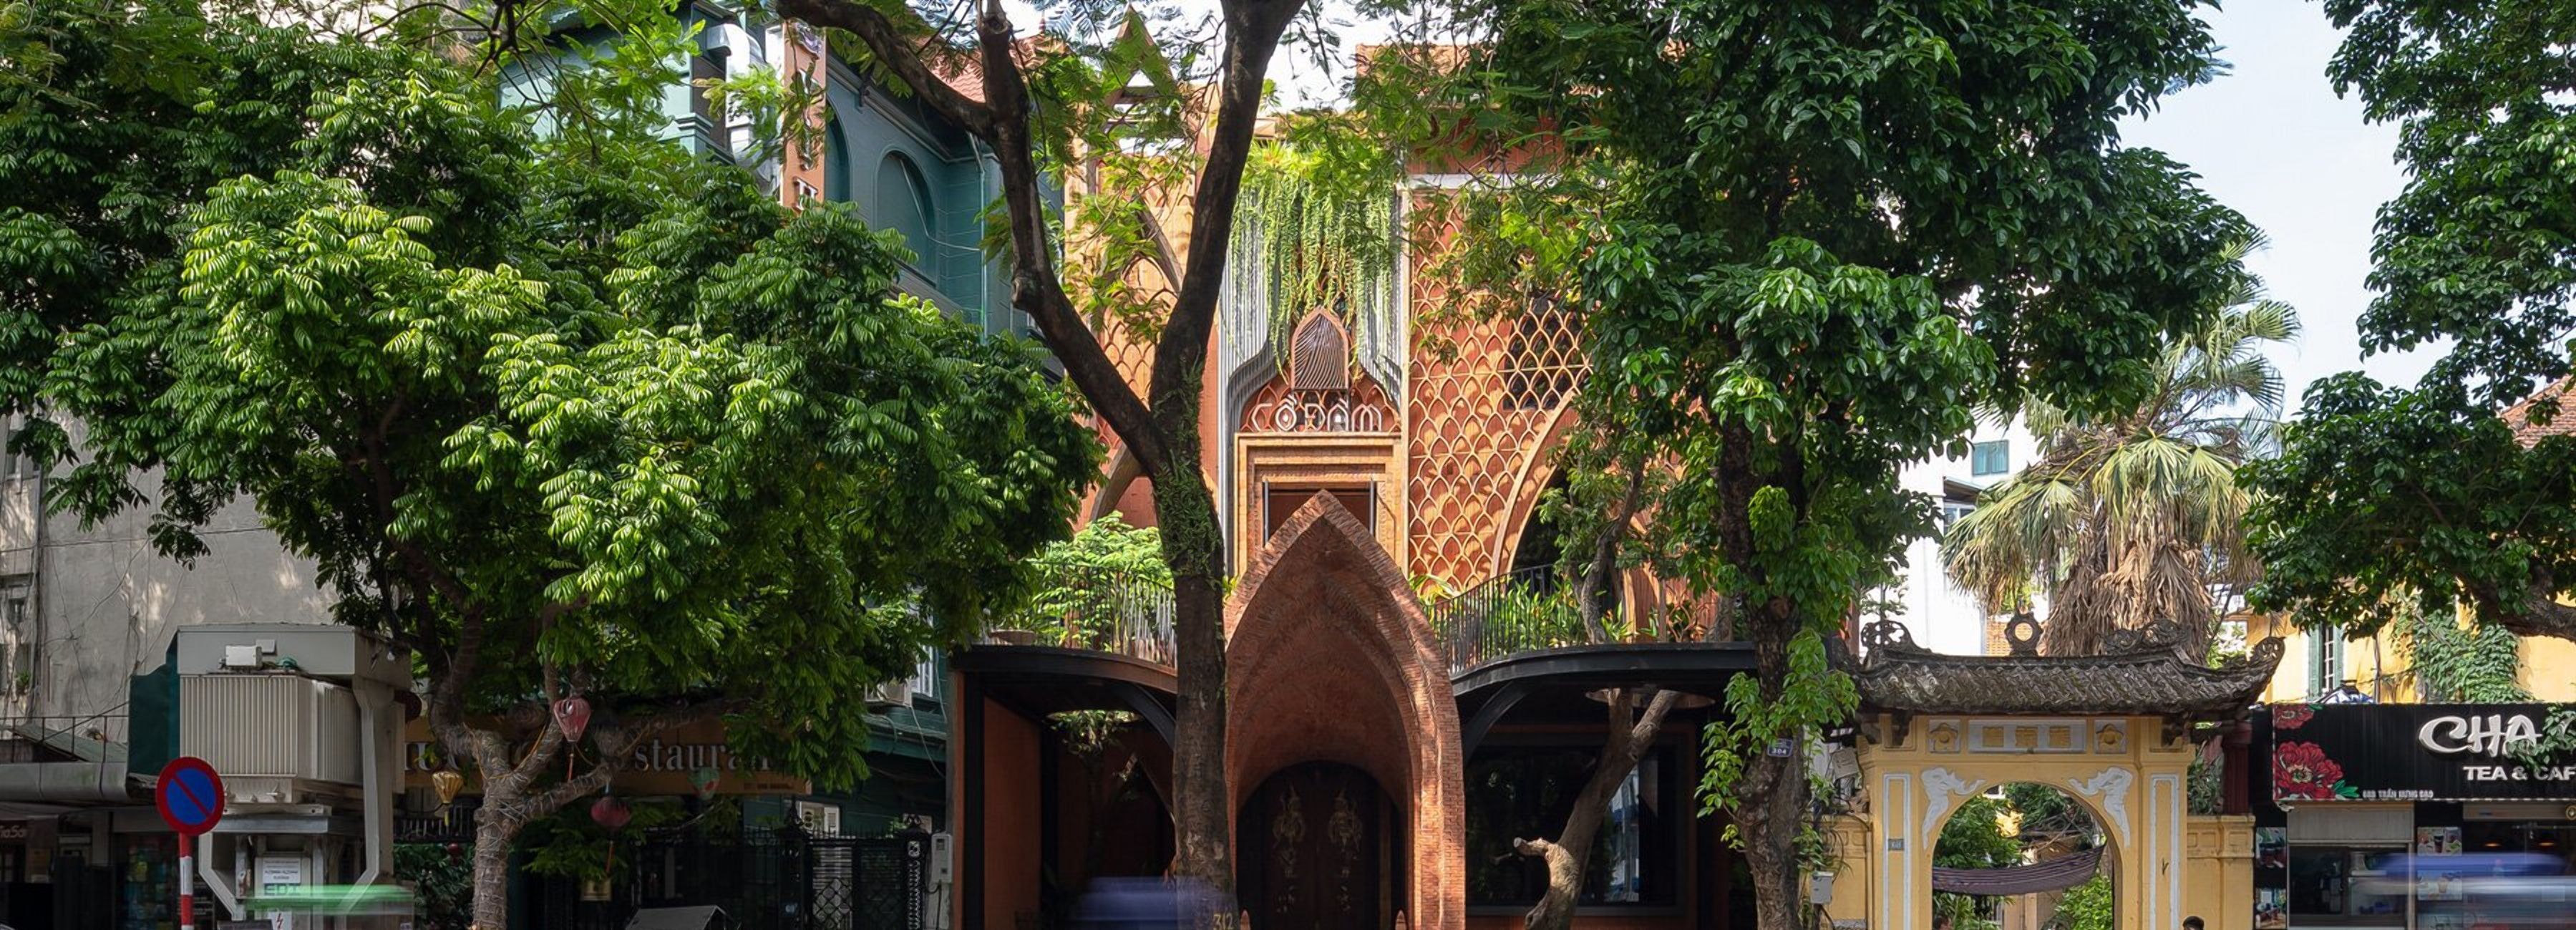 Ресторан і храм в одному: як виглядає особлива будівля у В'єтнамі – приголомшливі фото